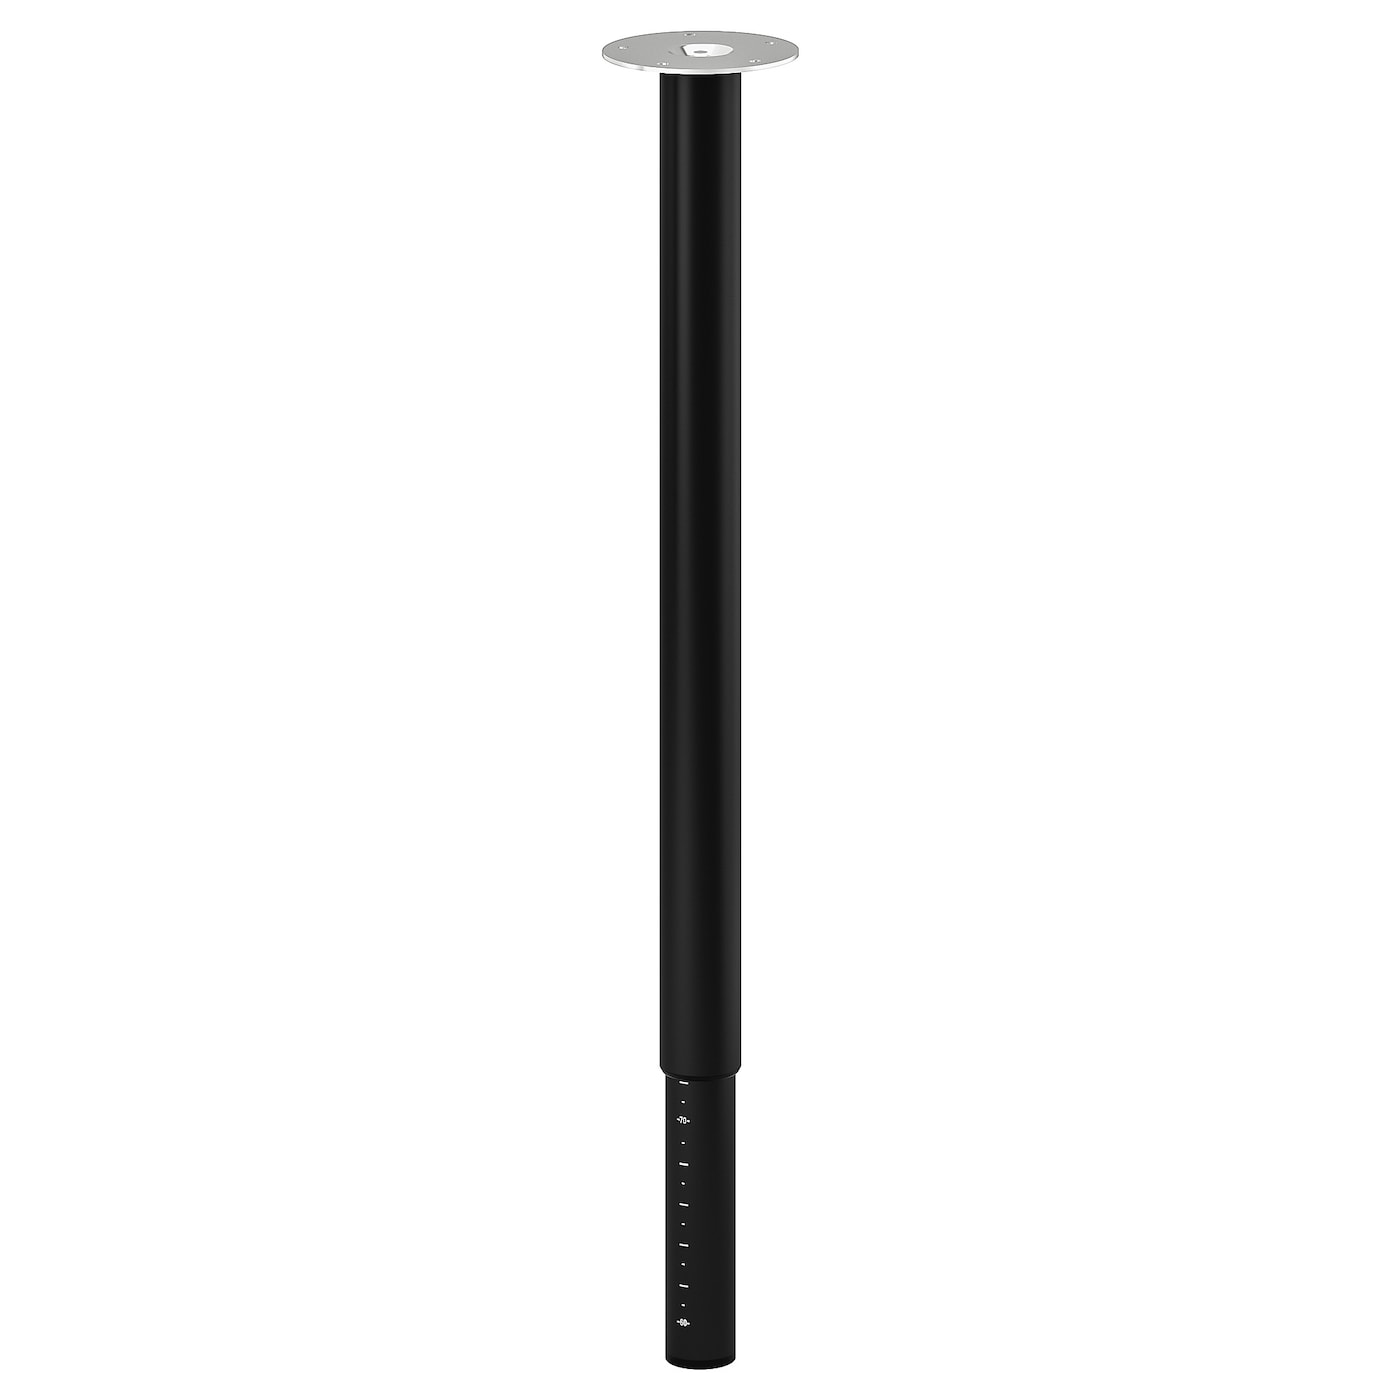 Ножка для стола - IKEA OLOV, 60-90 см, черный, ОЛОВ ИКЕА